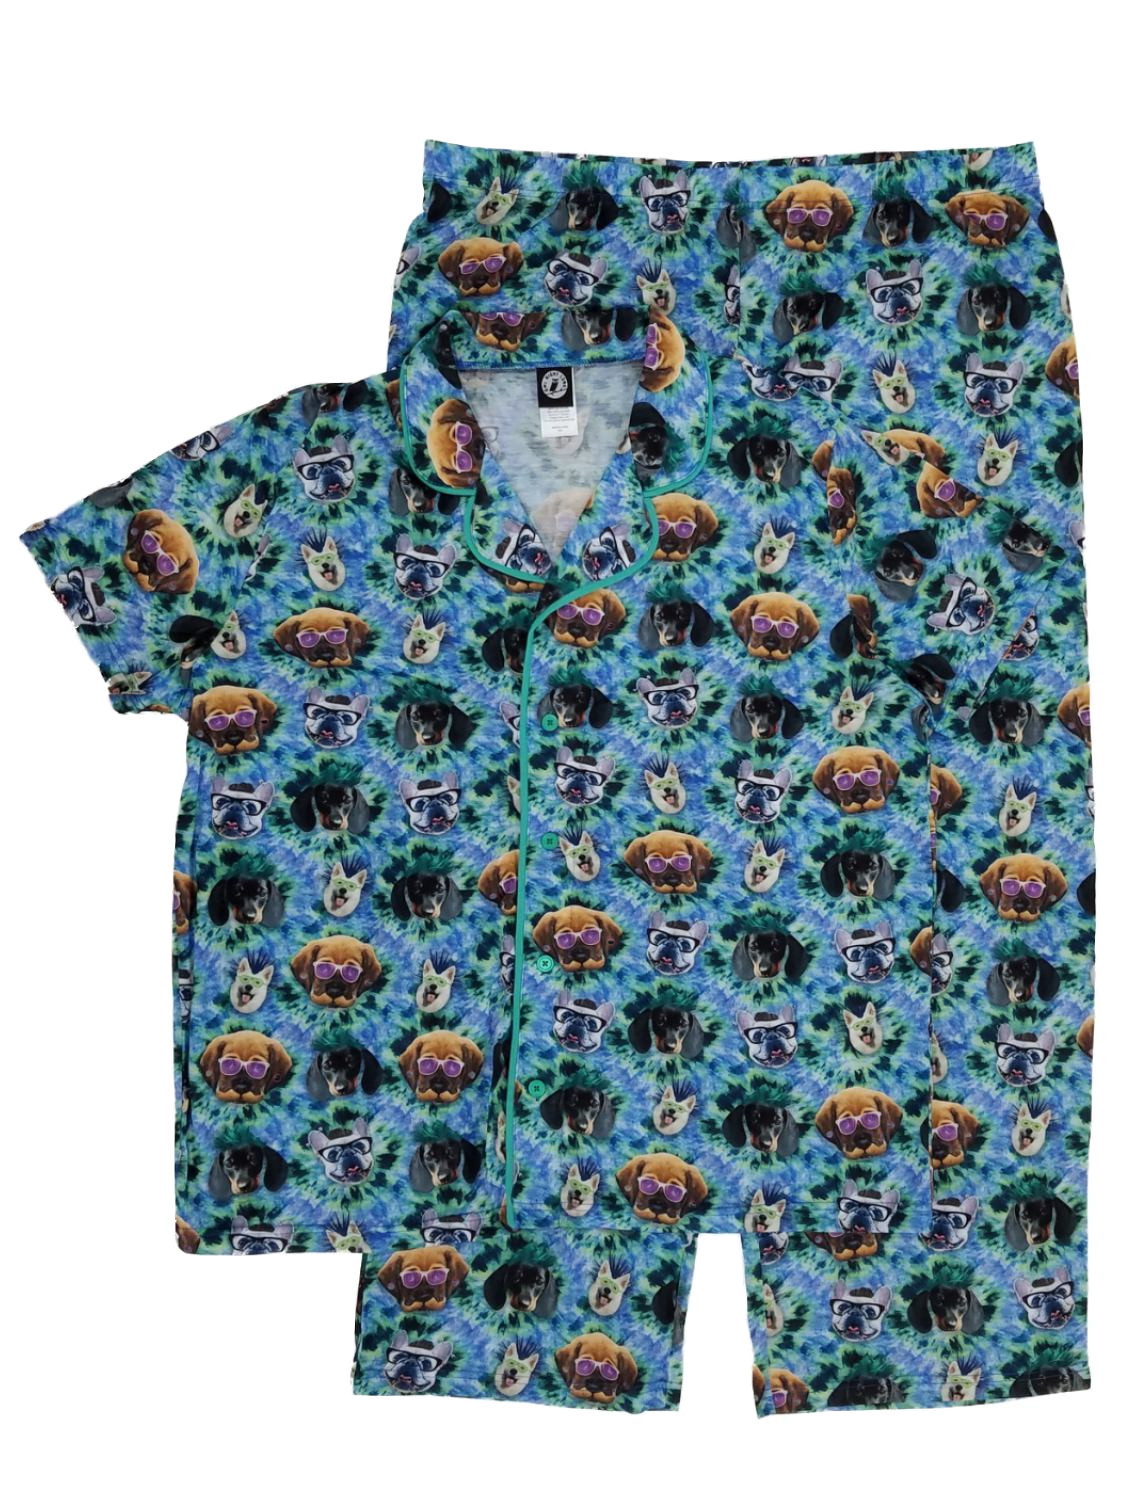 Owl Night Long Mens 2-Piece Tie-Dye Crazy Dogs Silly Glasses Sleepwear Pajama Set XX-Large